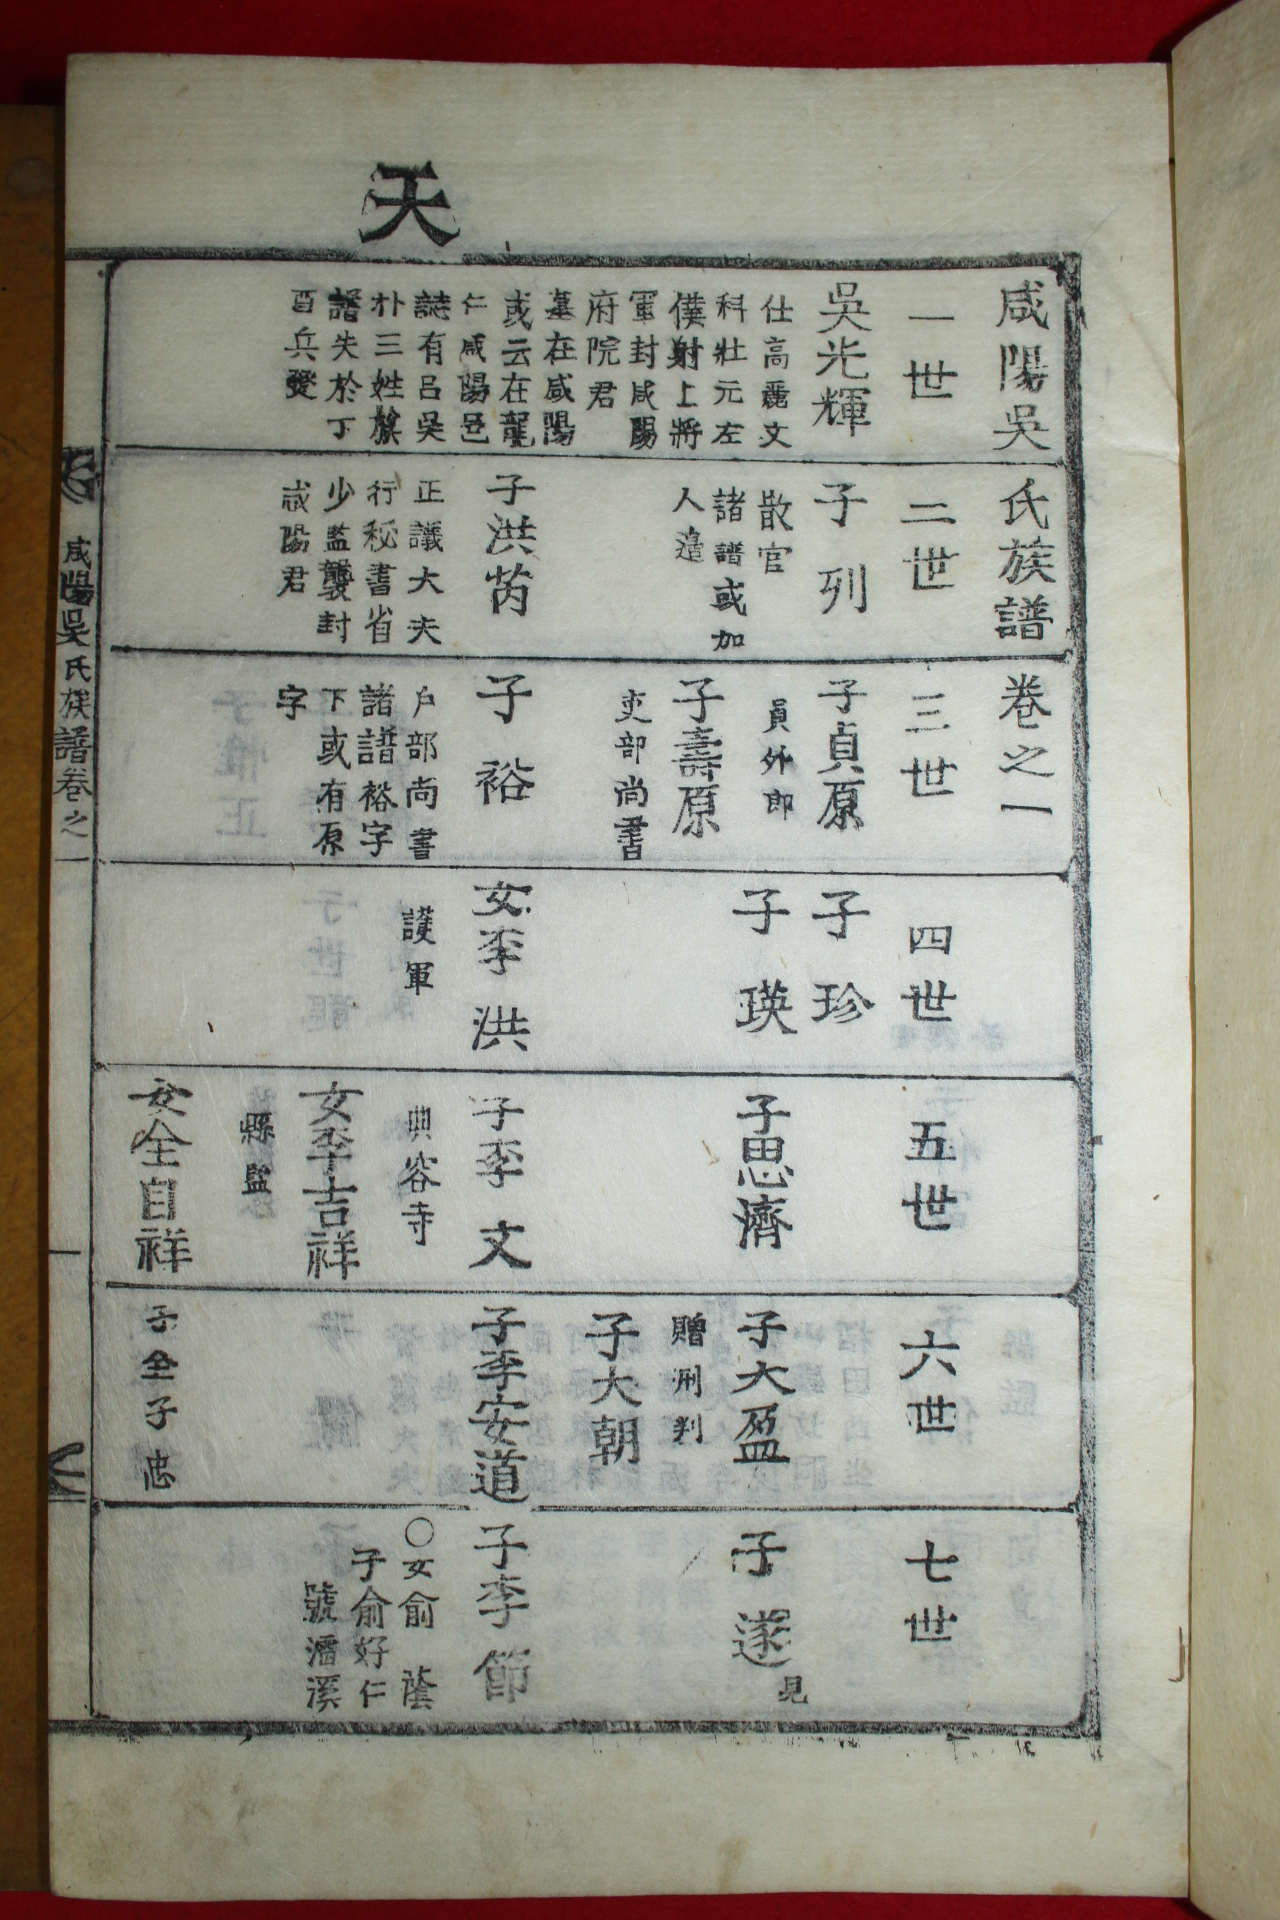 목활자본 함양오씨족보(咸陽吳氏族譜) 5책